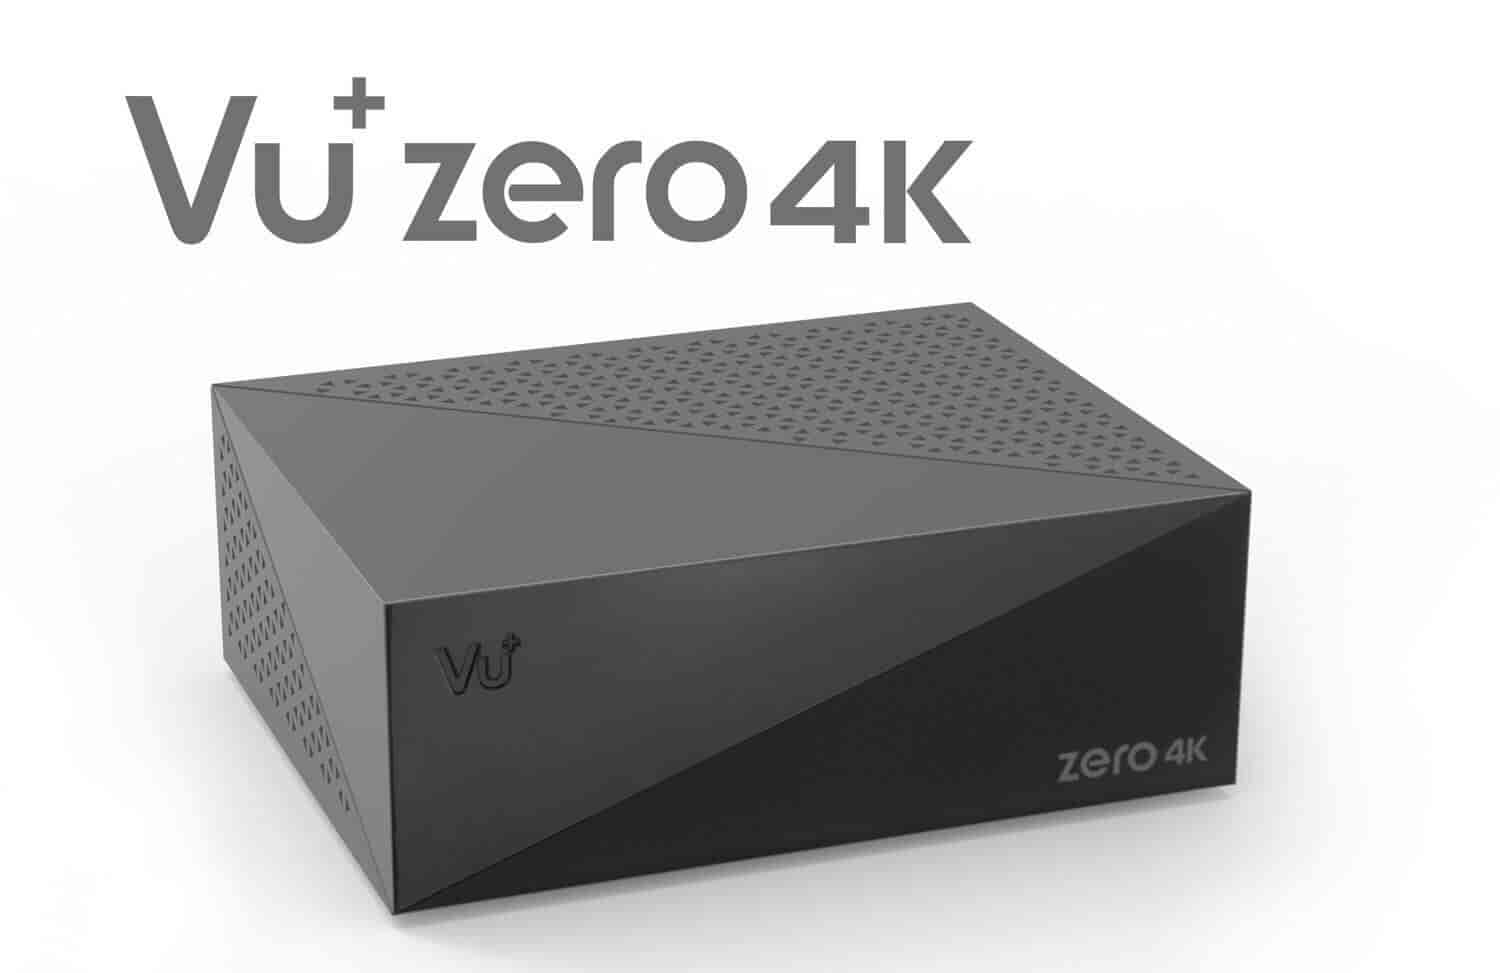 VU + Zero 4K Linux UHD set-top box with 1x DVB-C / T2 tuner